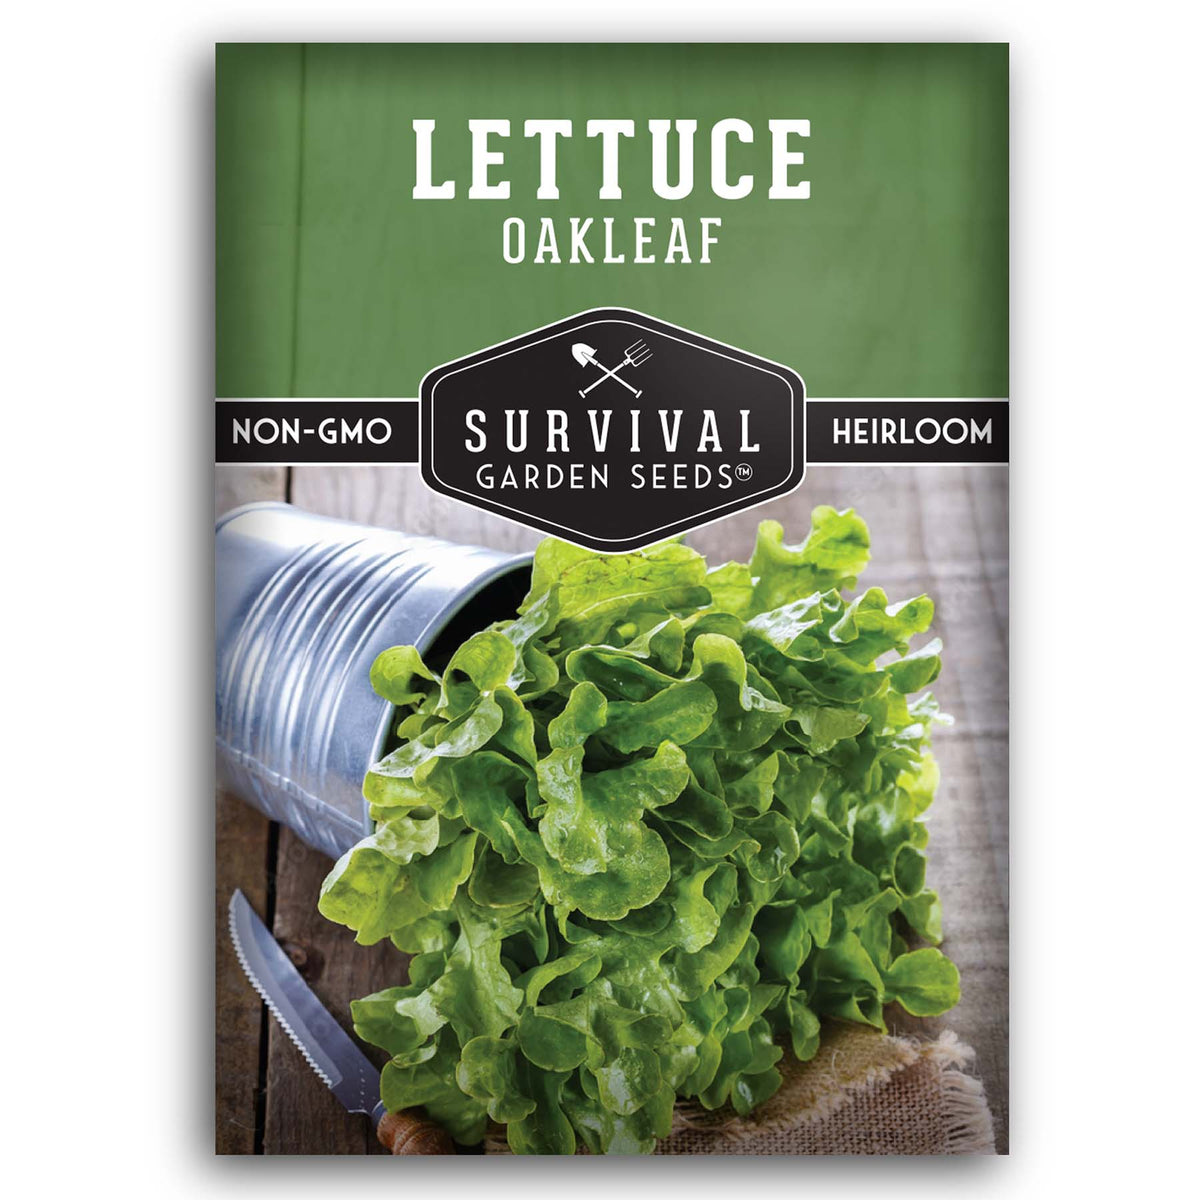 Oakleaf Lettuce seeds for planting